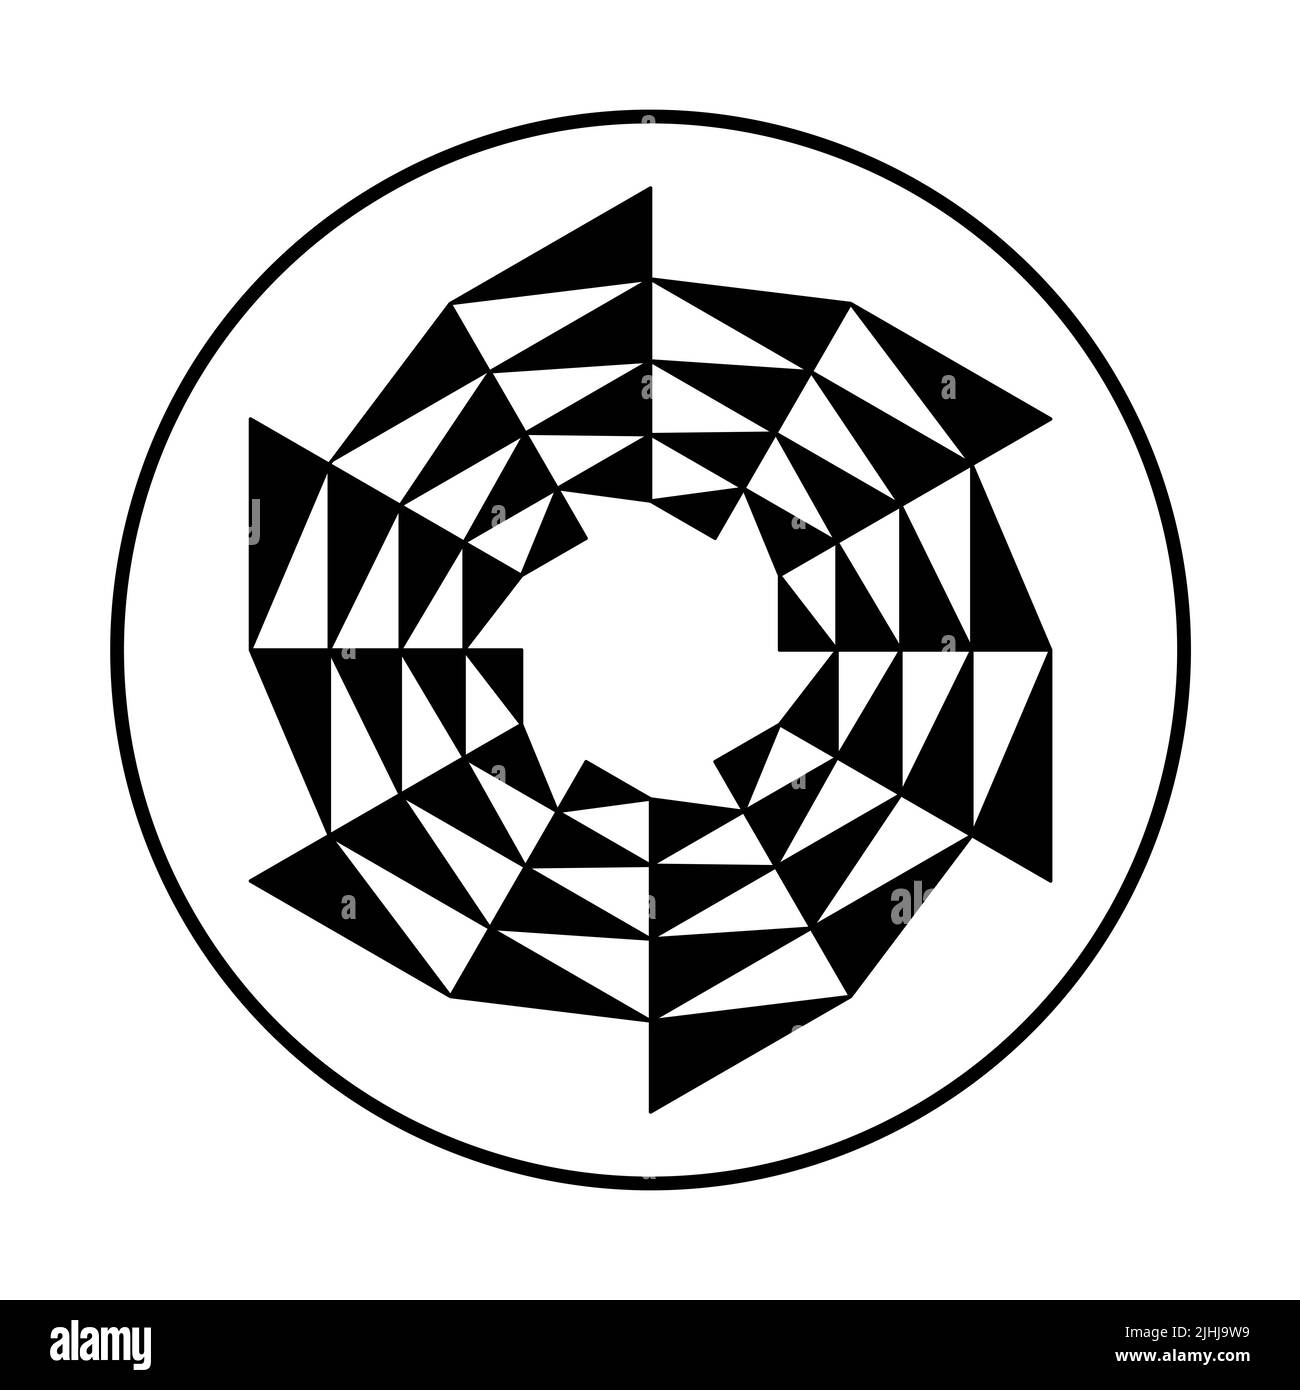 Hoja de sierra circular en forma de triángulo en círculo. Triángulos negros que forman una hoja de sierra circular, moviéndose en el sentido de las agujas del reloj, como símbolo de cambio. Foto de stock